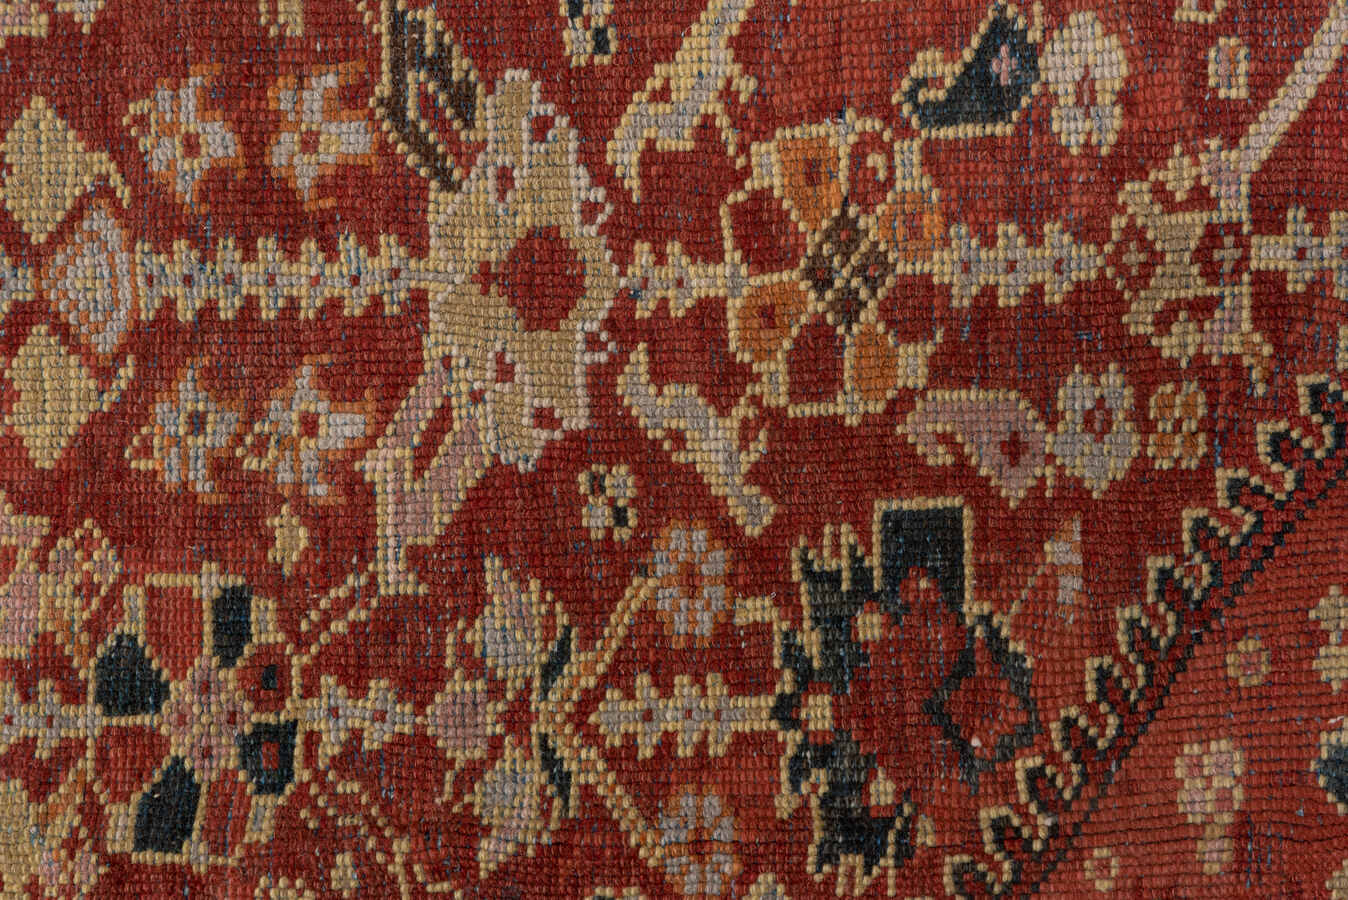 Antique mahal Carpet - # 56830